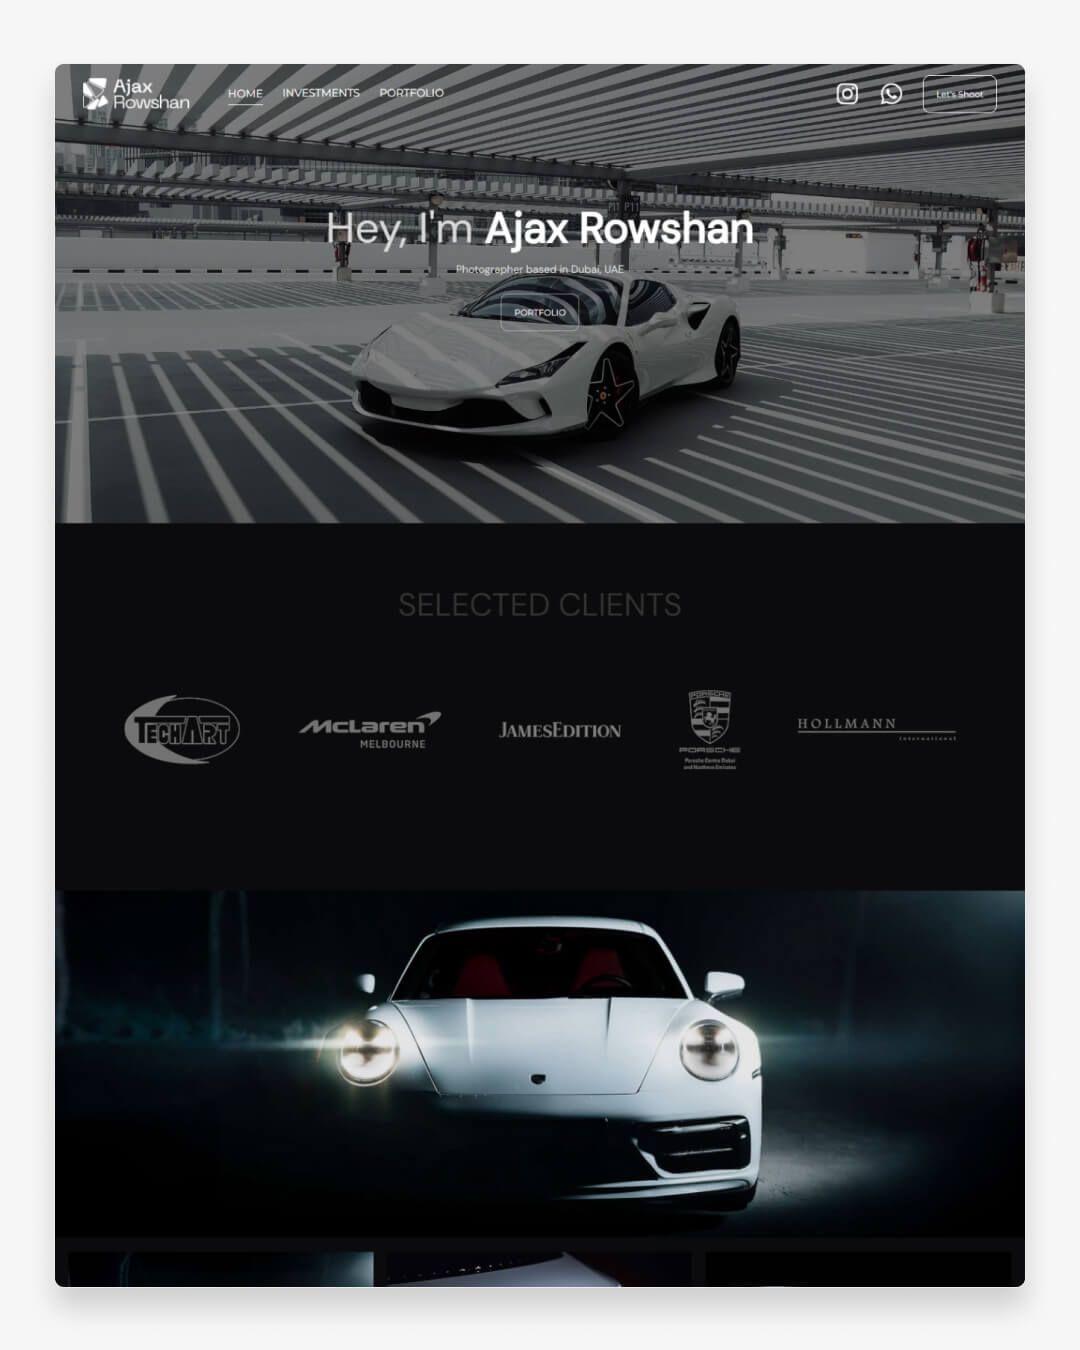 Witryna internetowa Ajax Rowshan Portfolio ze zdjęciami samochodów